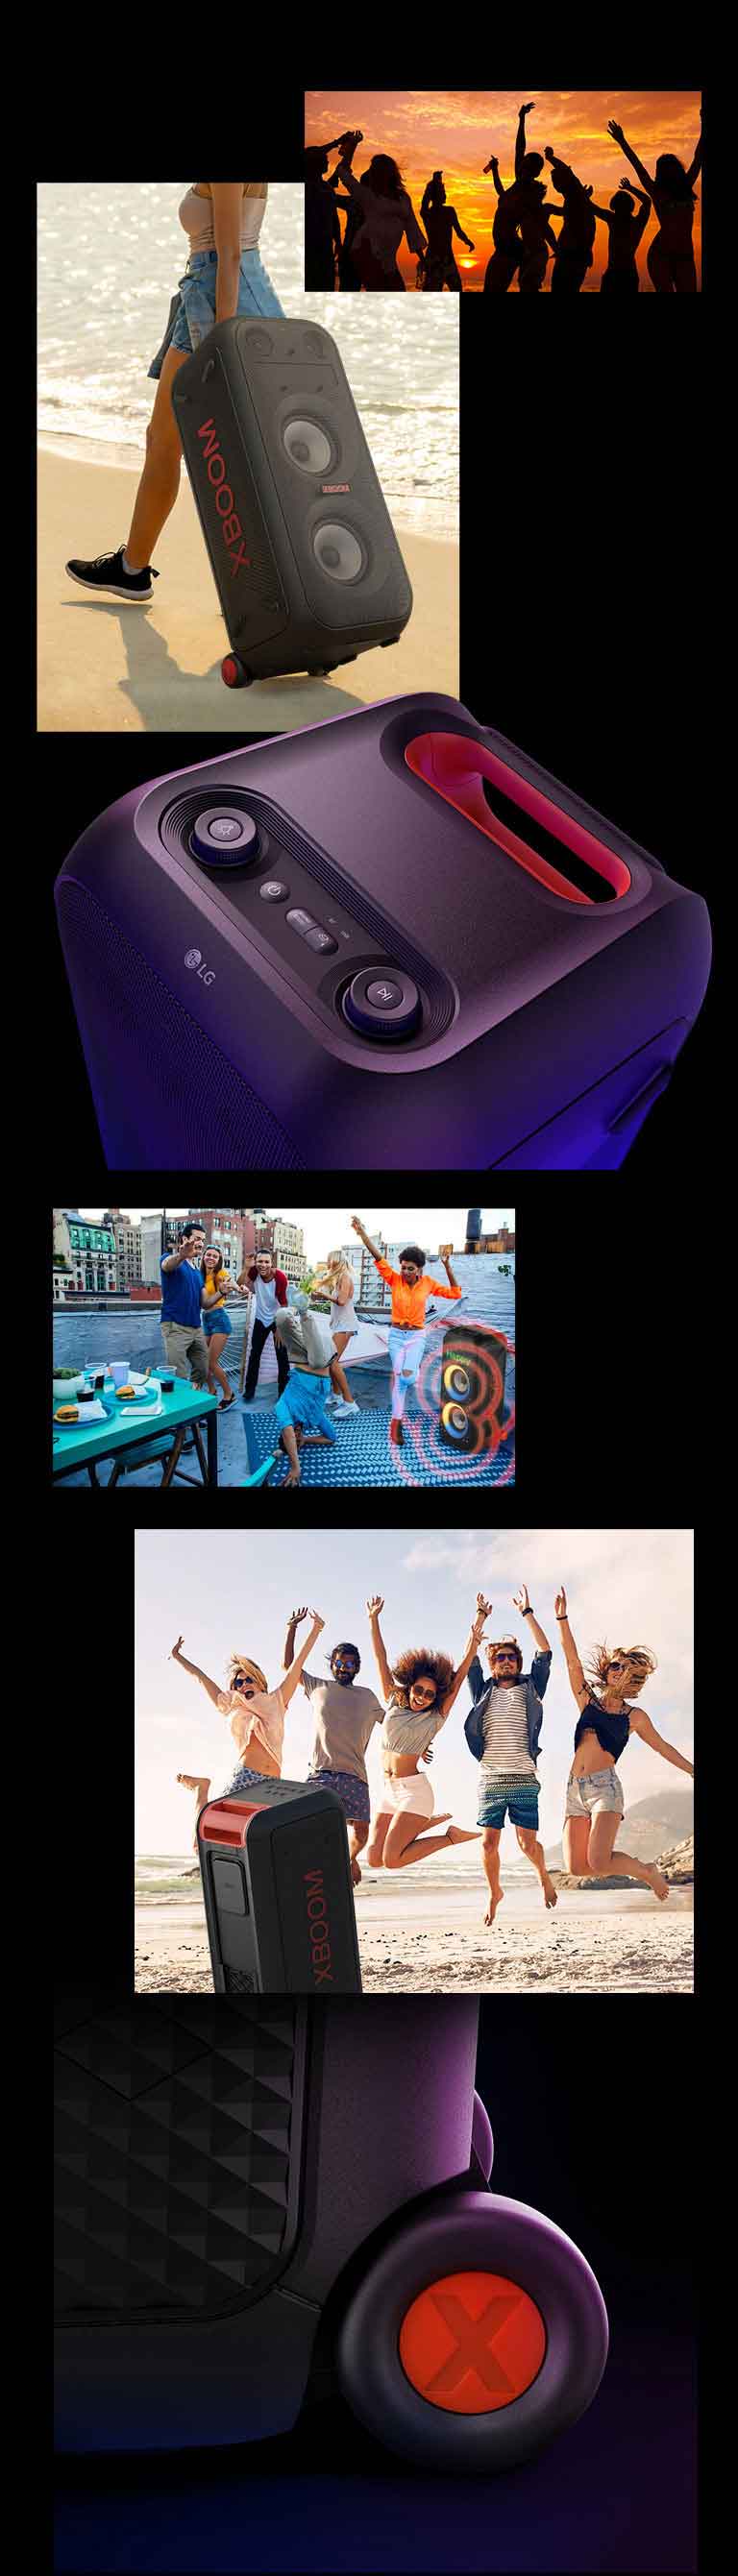 Az LG XBOOM XL9T szemléltető képei. Fent emberek sziluettje látható, valamint egy nő, aki a teleszkópos fogantyú és a kerekek segítségével könnyedén mozgatja a hangszórót. A hangszóró és a teleszkópos fogantyú felülnézete. Az emberek medencés partin szórakoznak, mögöttük két LG XBOOM XL9T látható hangot jelképező grafikával. A hangszóró hátulnézete és a tengerparton ugráló emberek láthatók, valamint egy közelkép a kerékről.